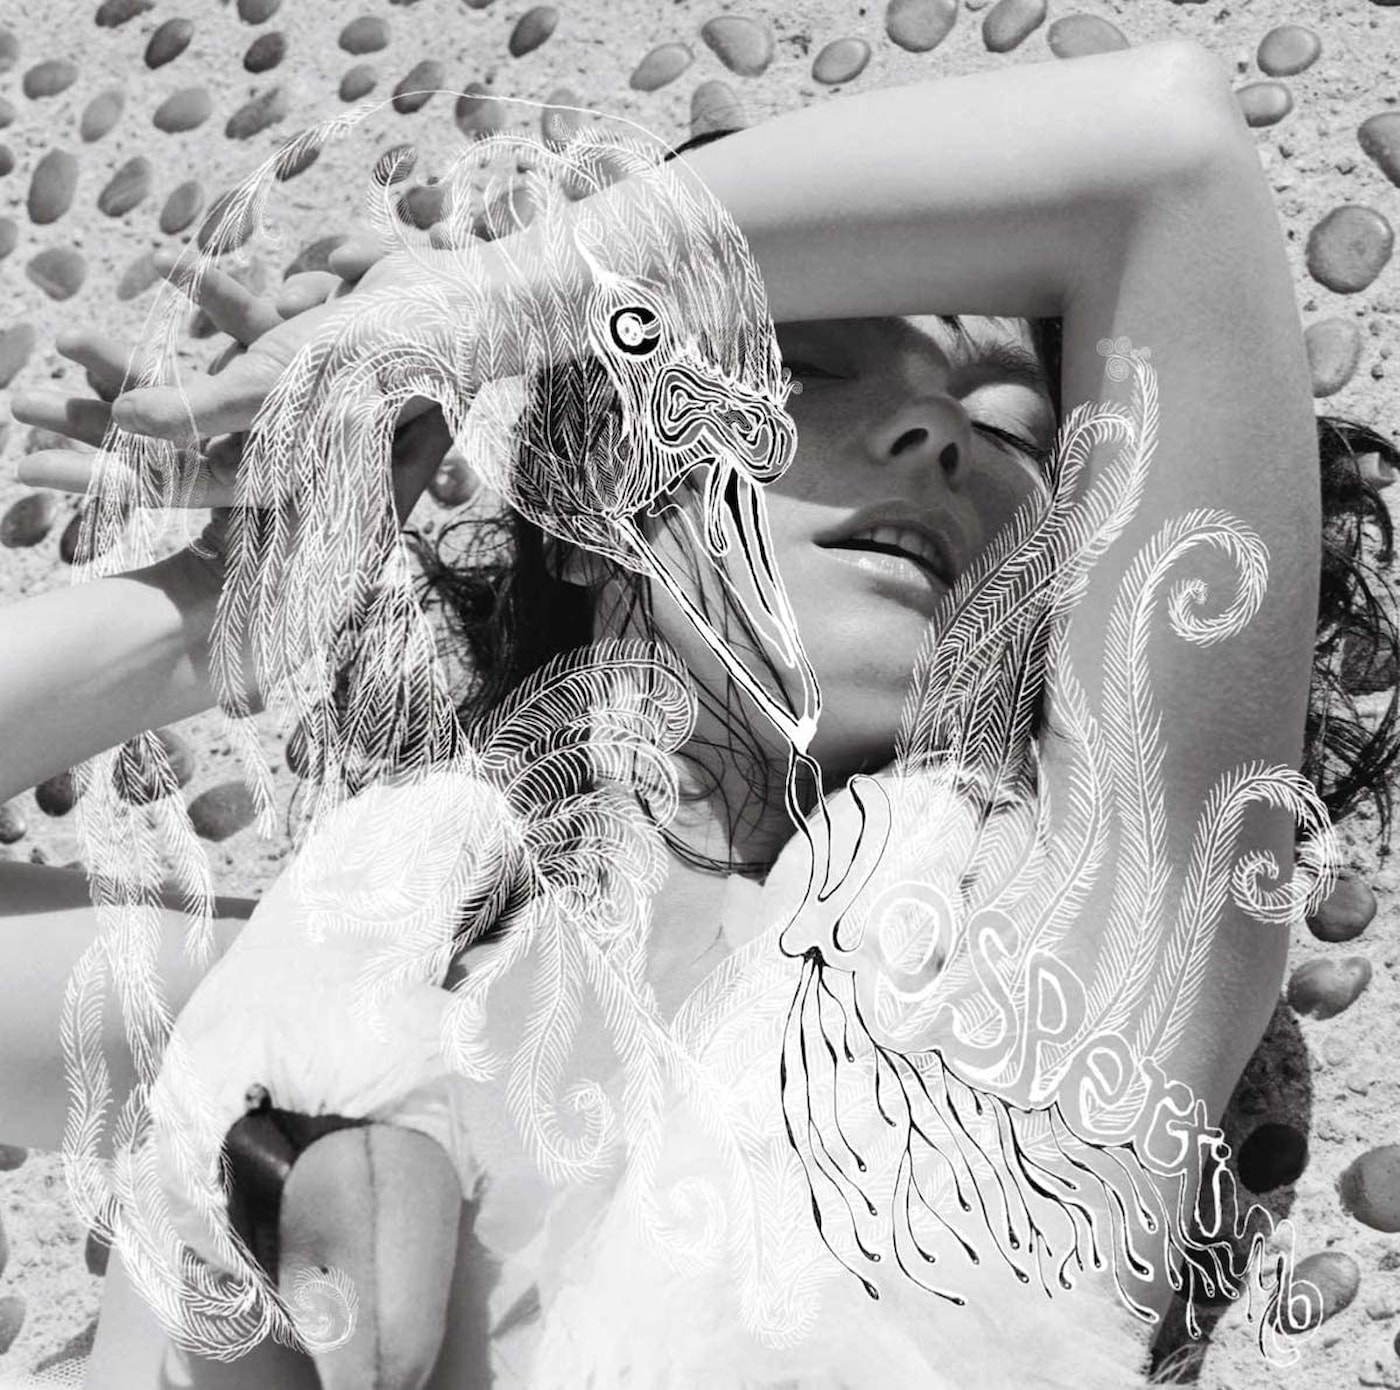 【後編】ビョーク（Björk）が『Vespertine』で志向した、セルマを癒す安寧の薄暮【20周年記念】